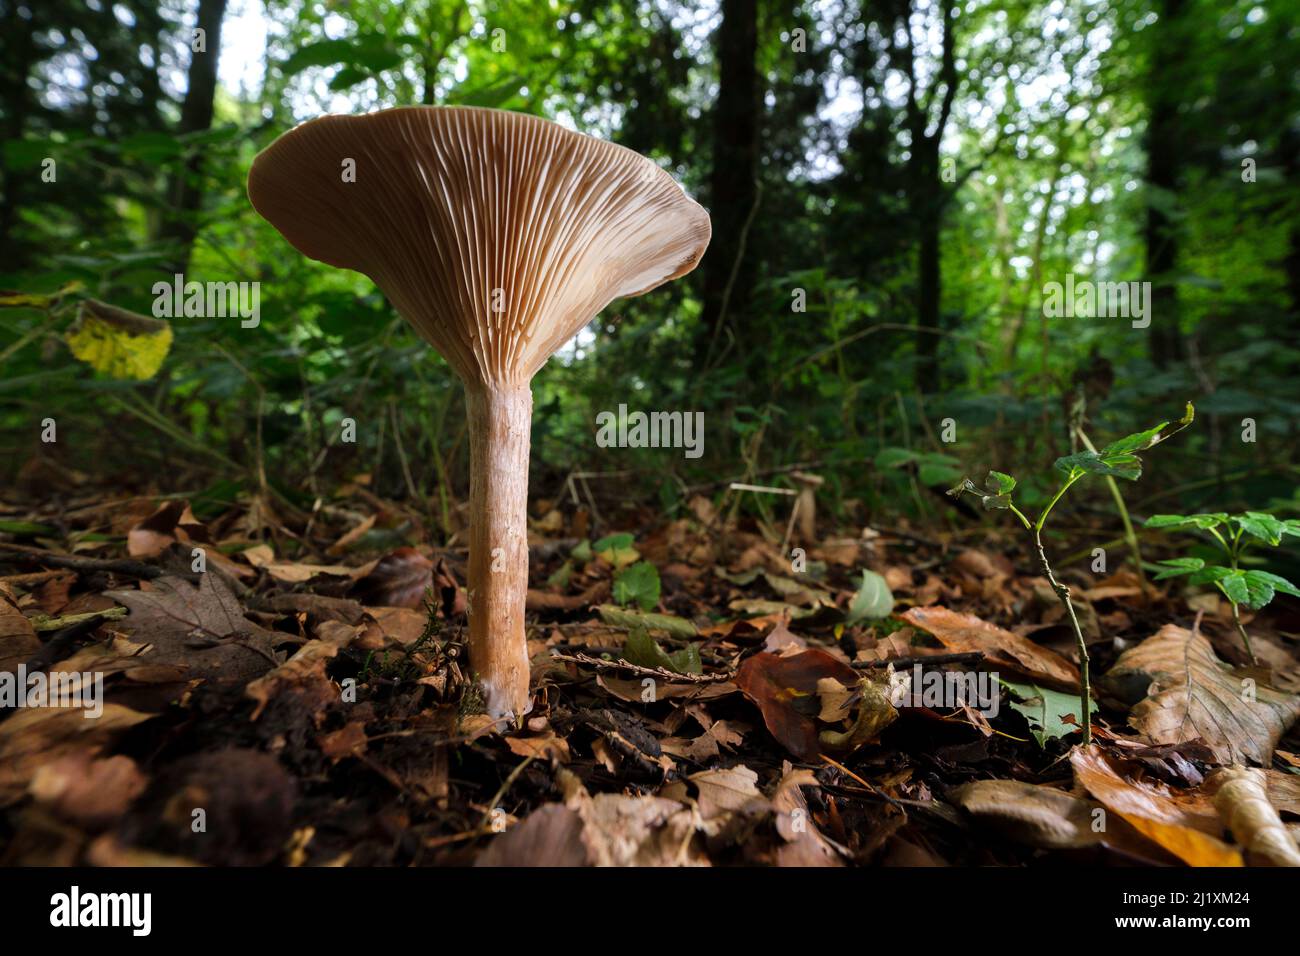 Un unico sgabello o funghi sul pavimento della foresta, che mostra delicate branchie e struttura sul lato inferiore. Foto Stock